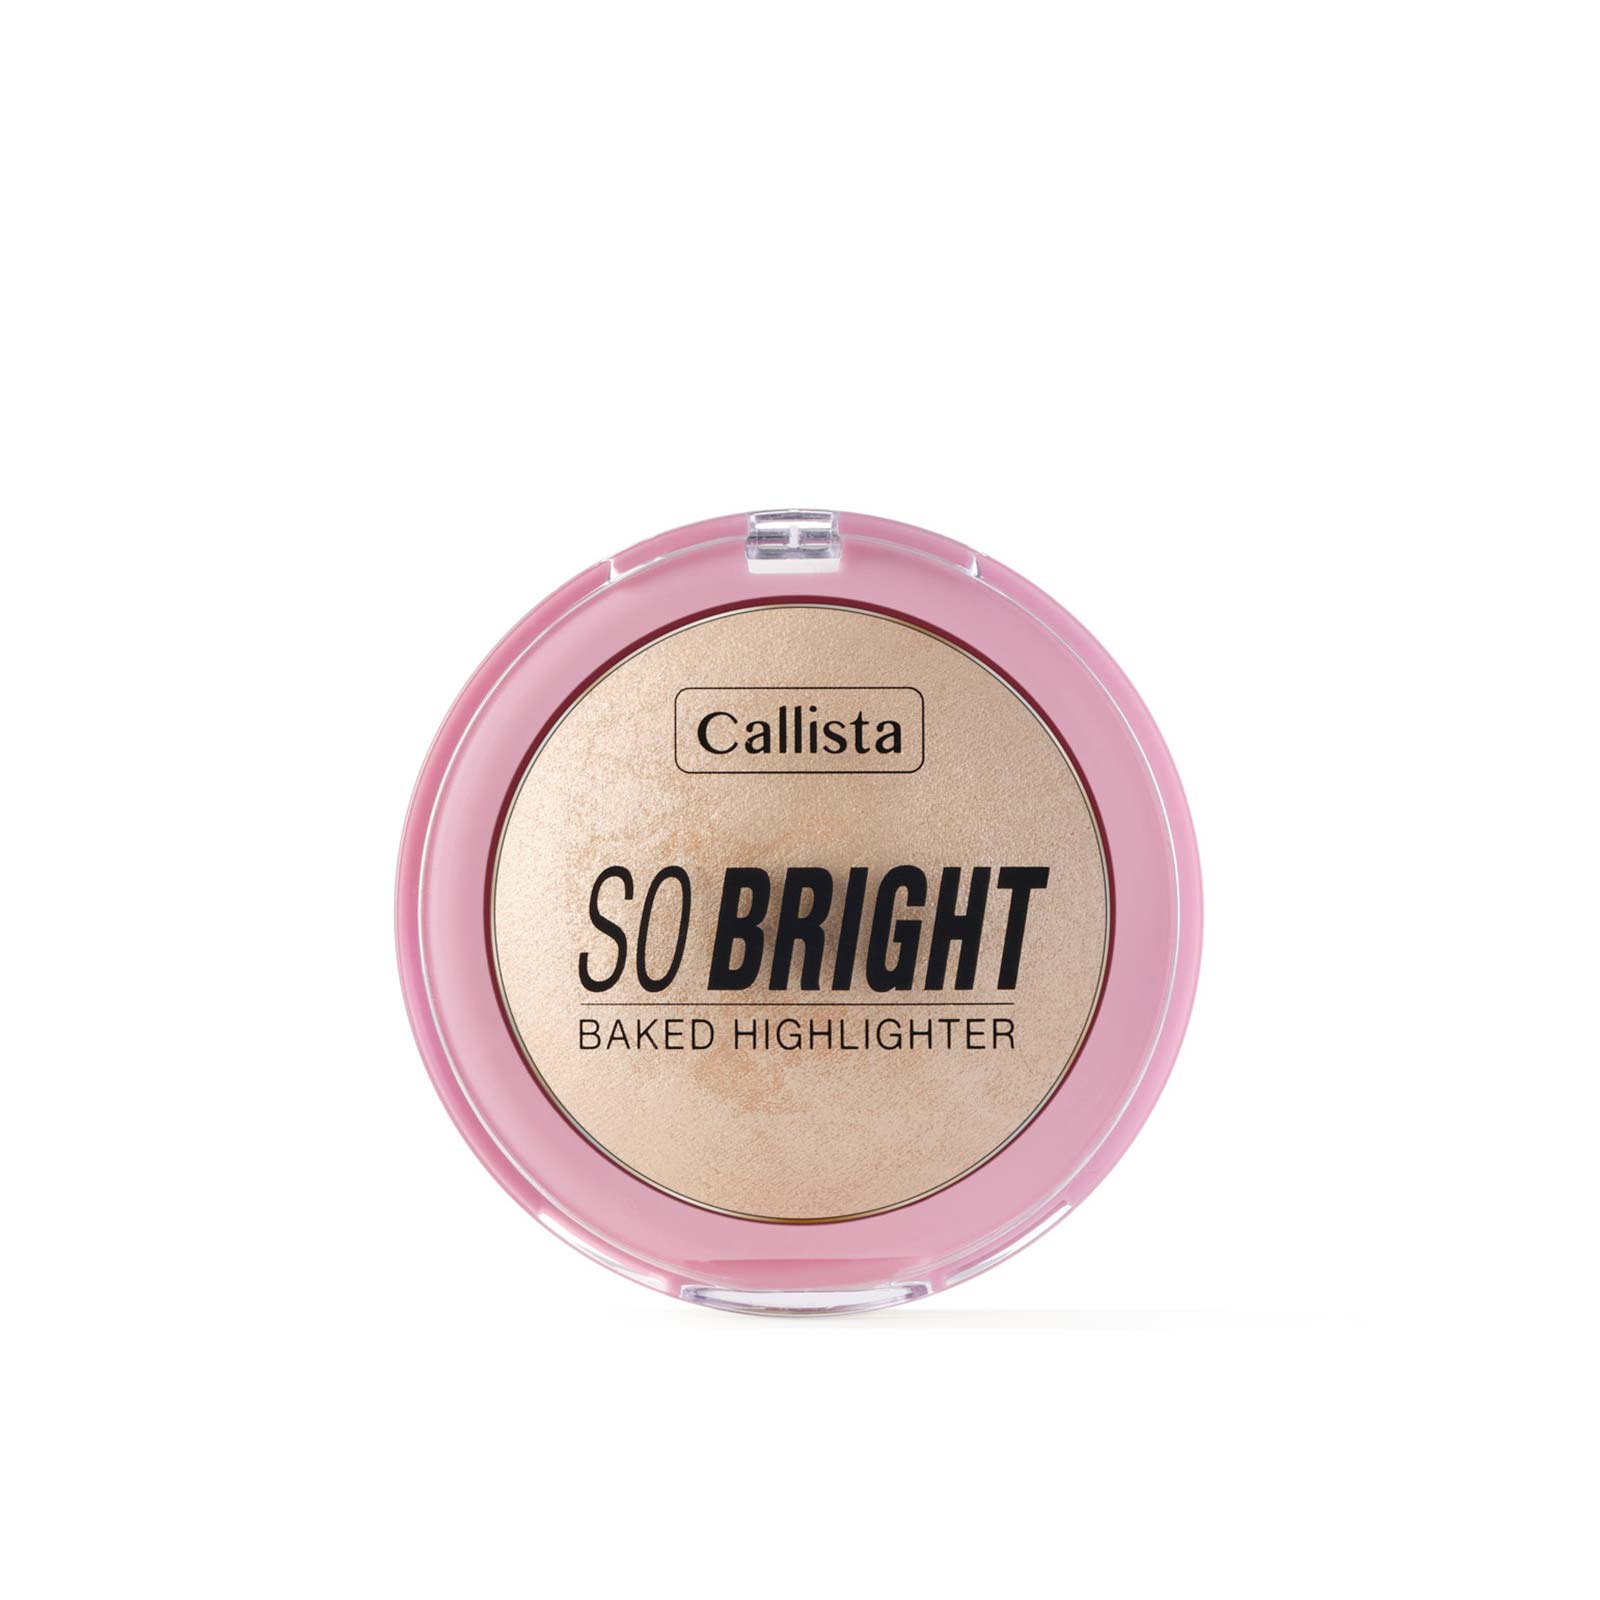 Callista So Bright Baked Highlighter 10g 01